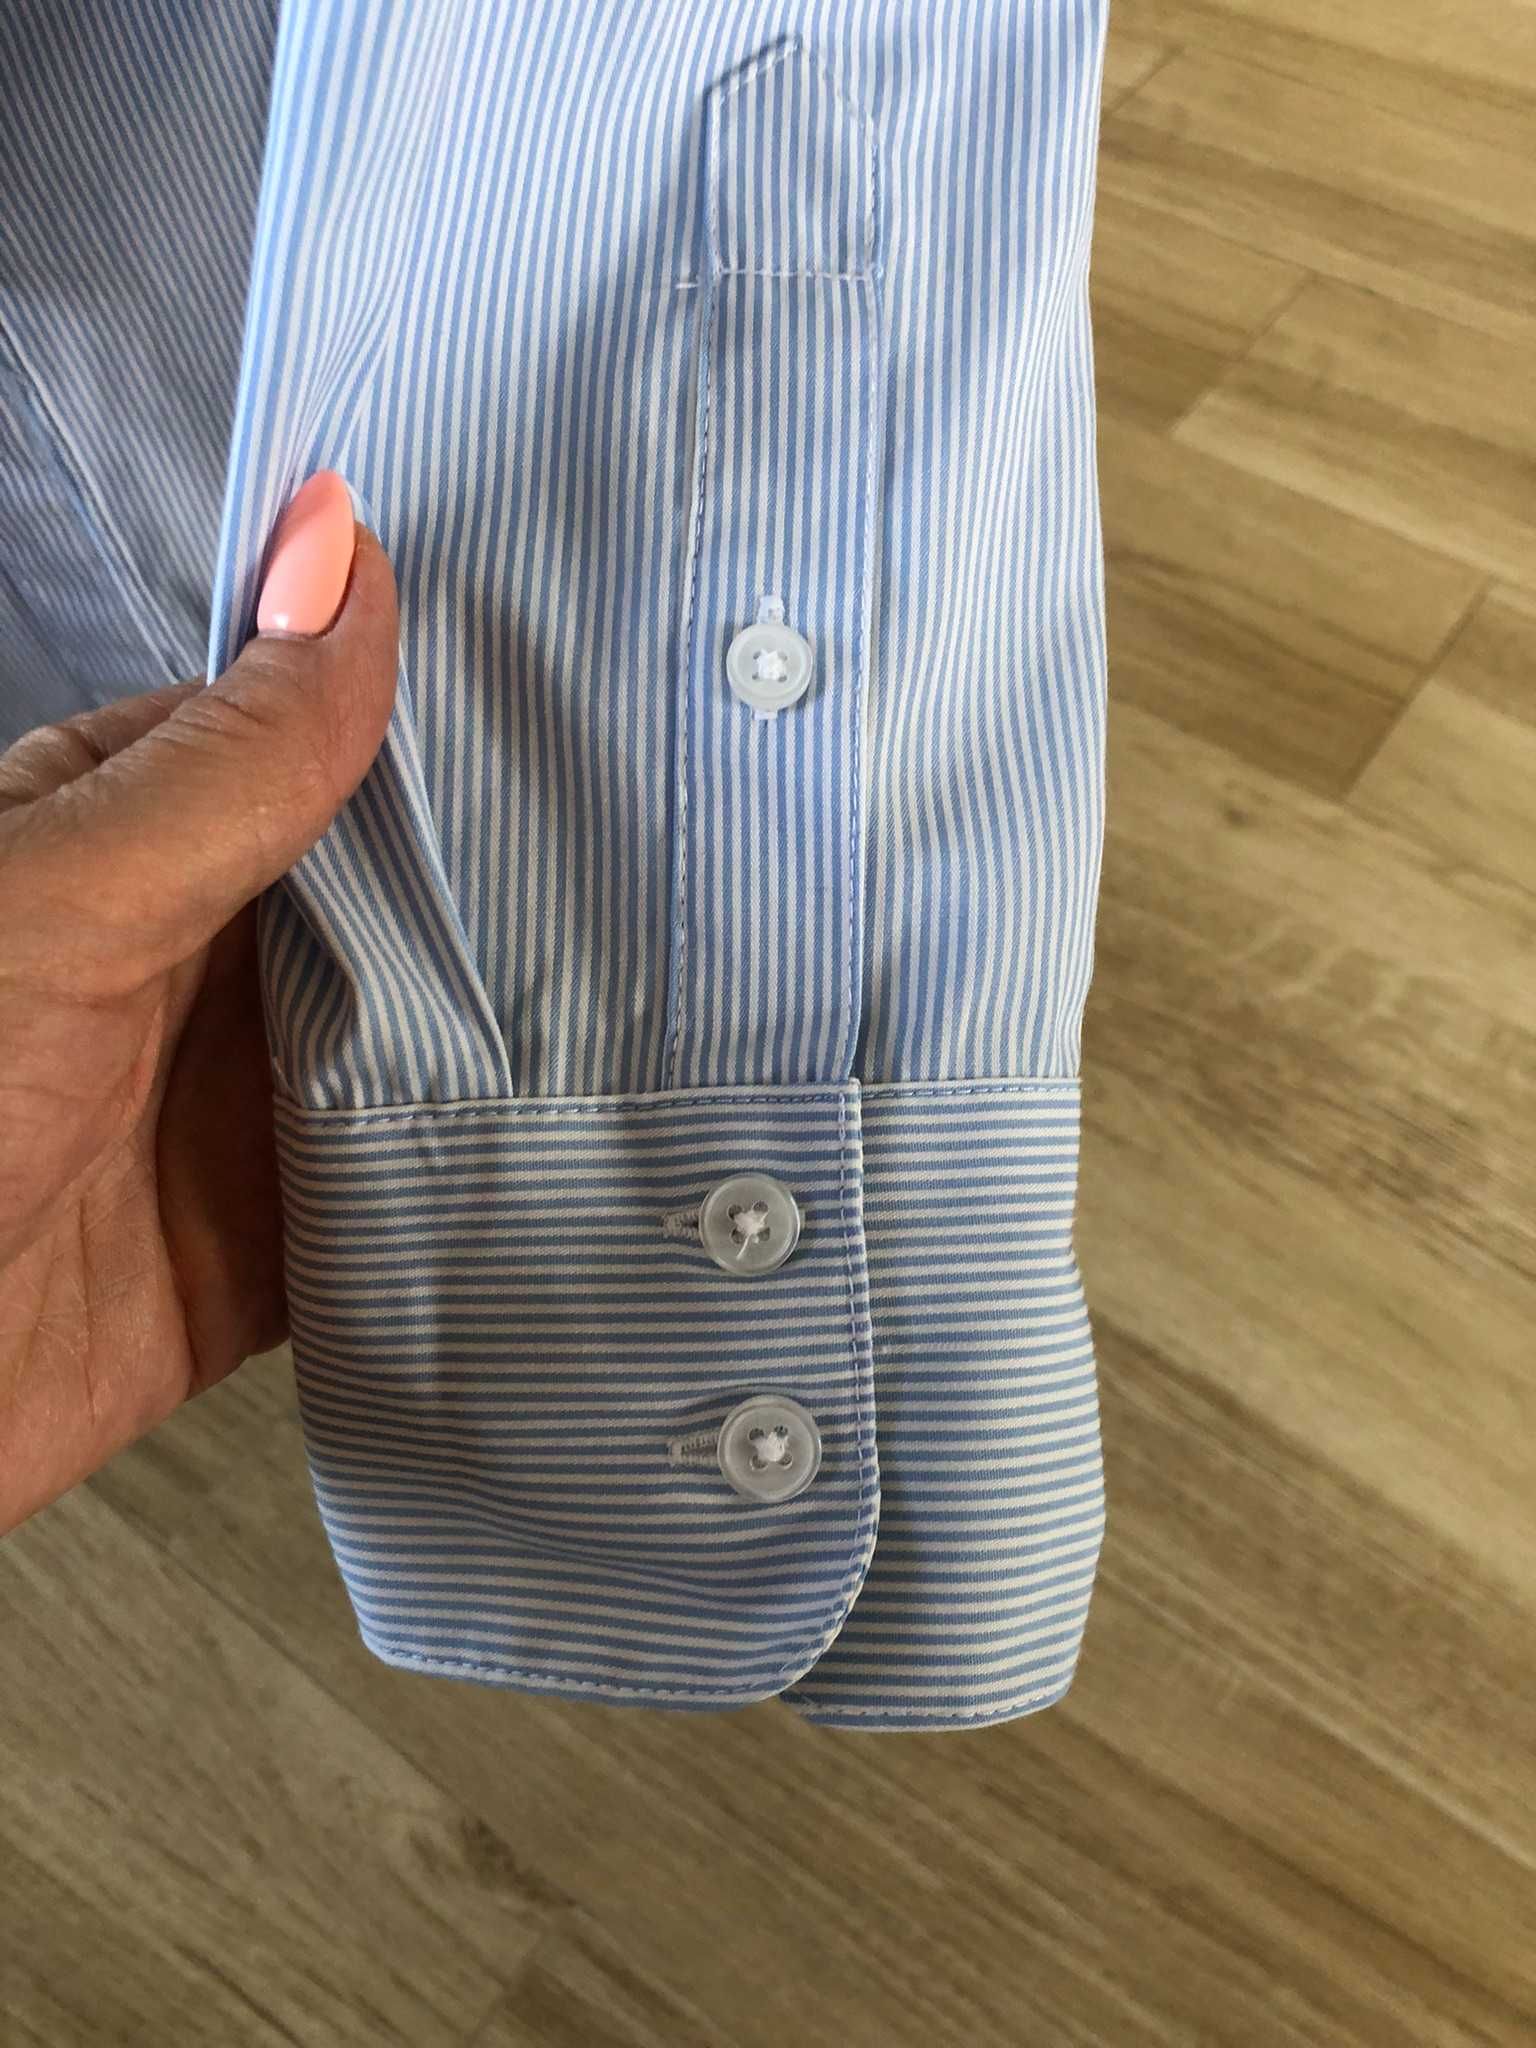 Koszula damska H&M, niebieska w prążki, rozmiar 36